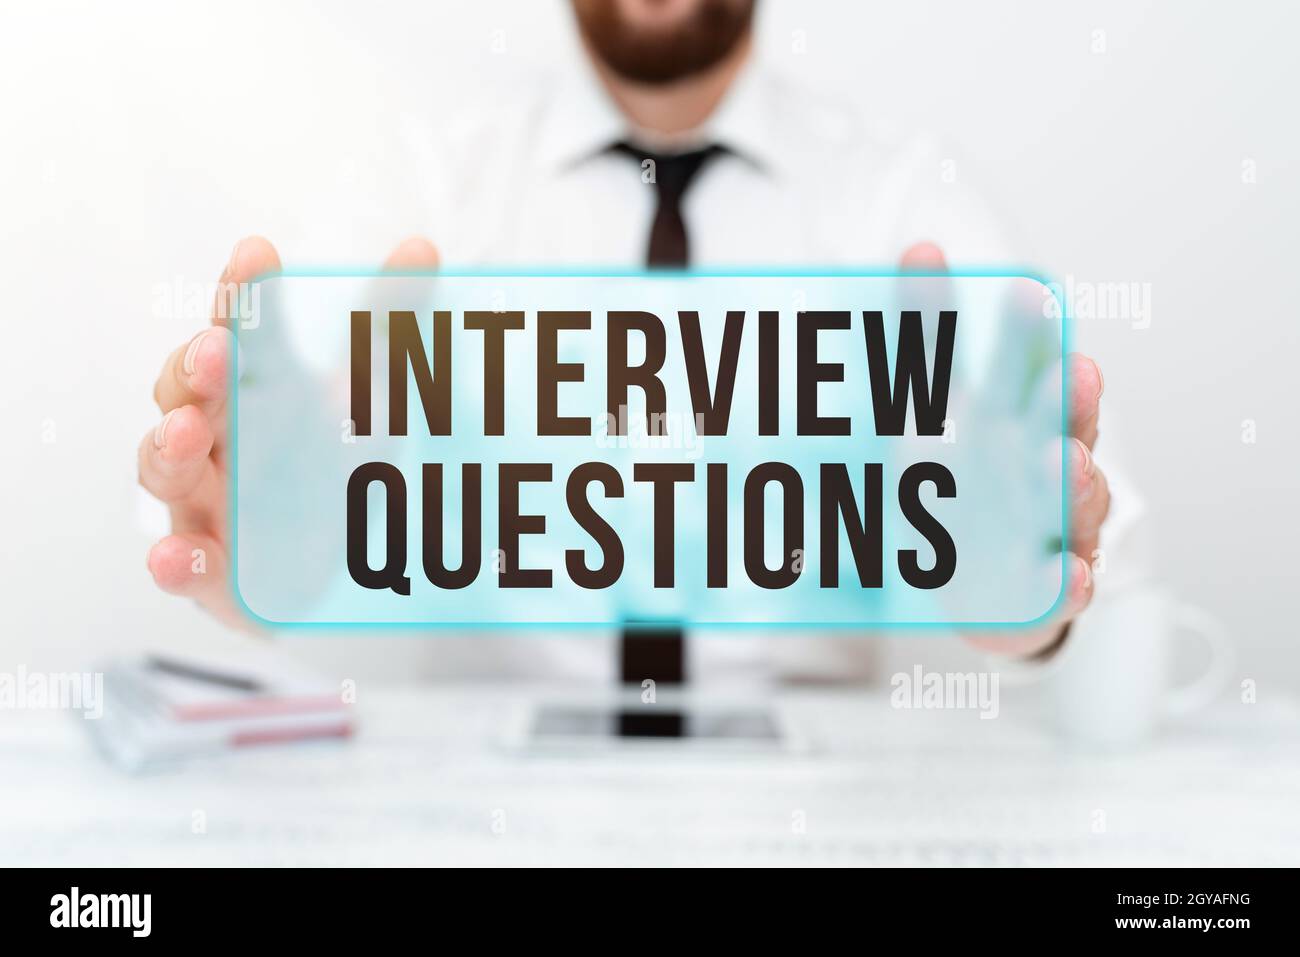 Muestra las preguntas de la entrevista, concepto que significa el tema típico que se hace o pregunta durante una entrevista que presenta la tecnología de la comunicación Smartp Foto de stock